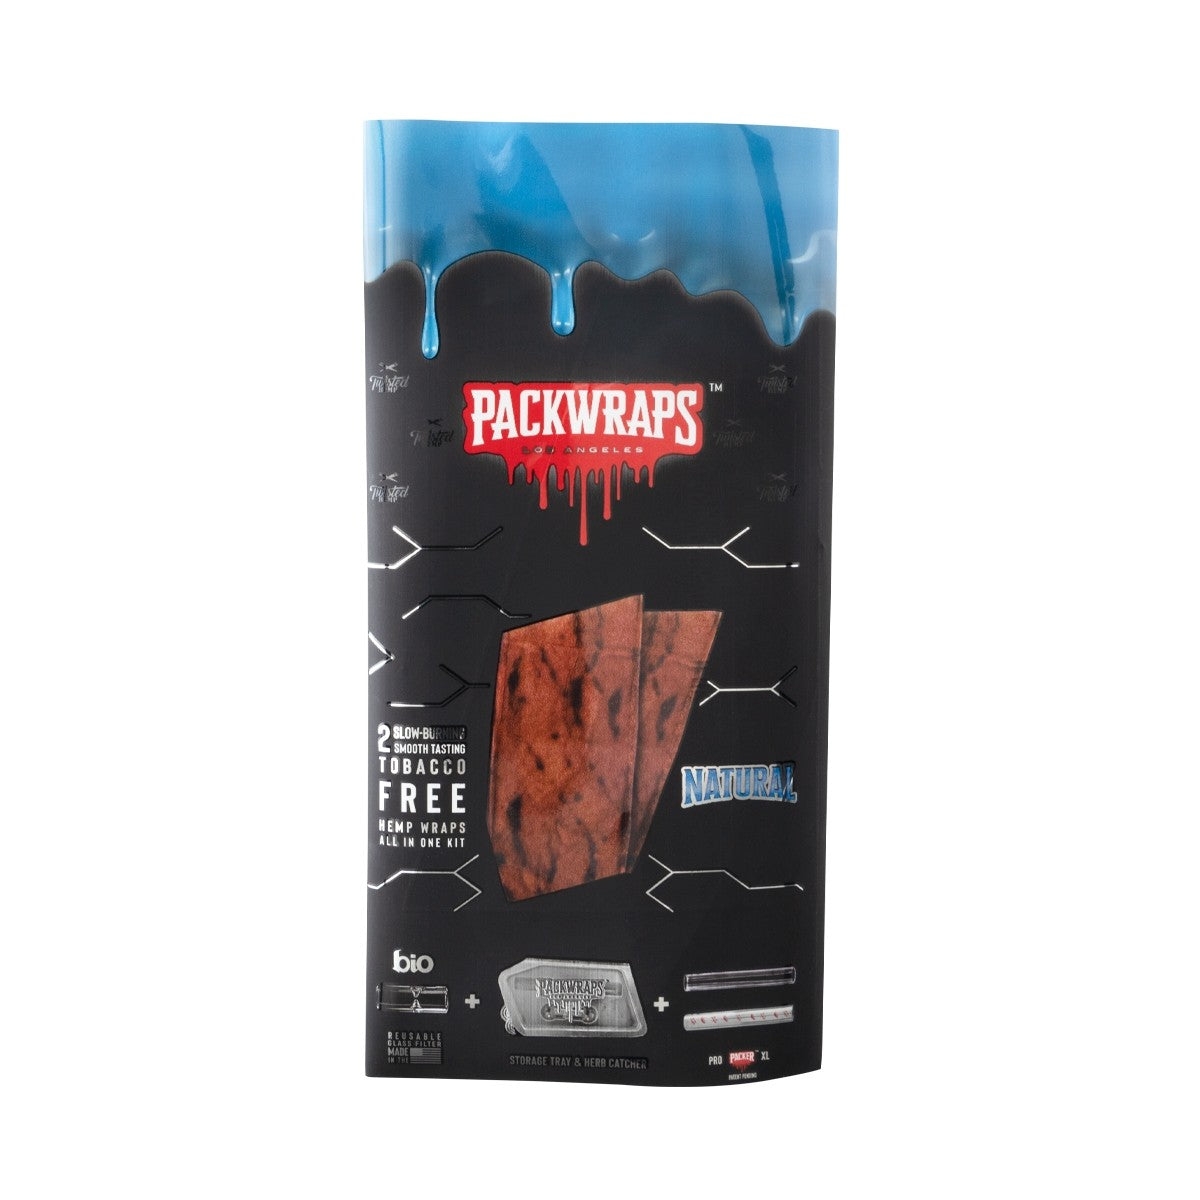 PACKWRAPS - Natural Hemp Wraps Kit